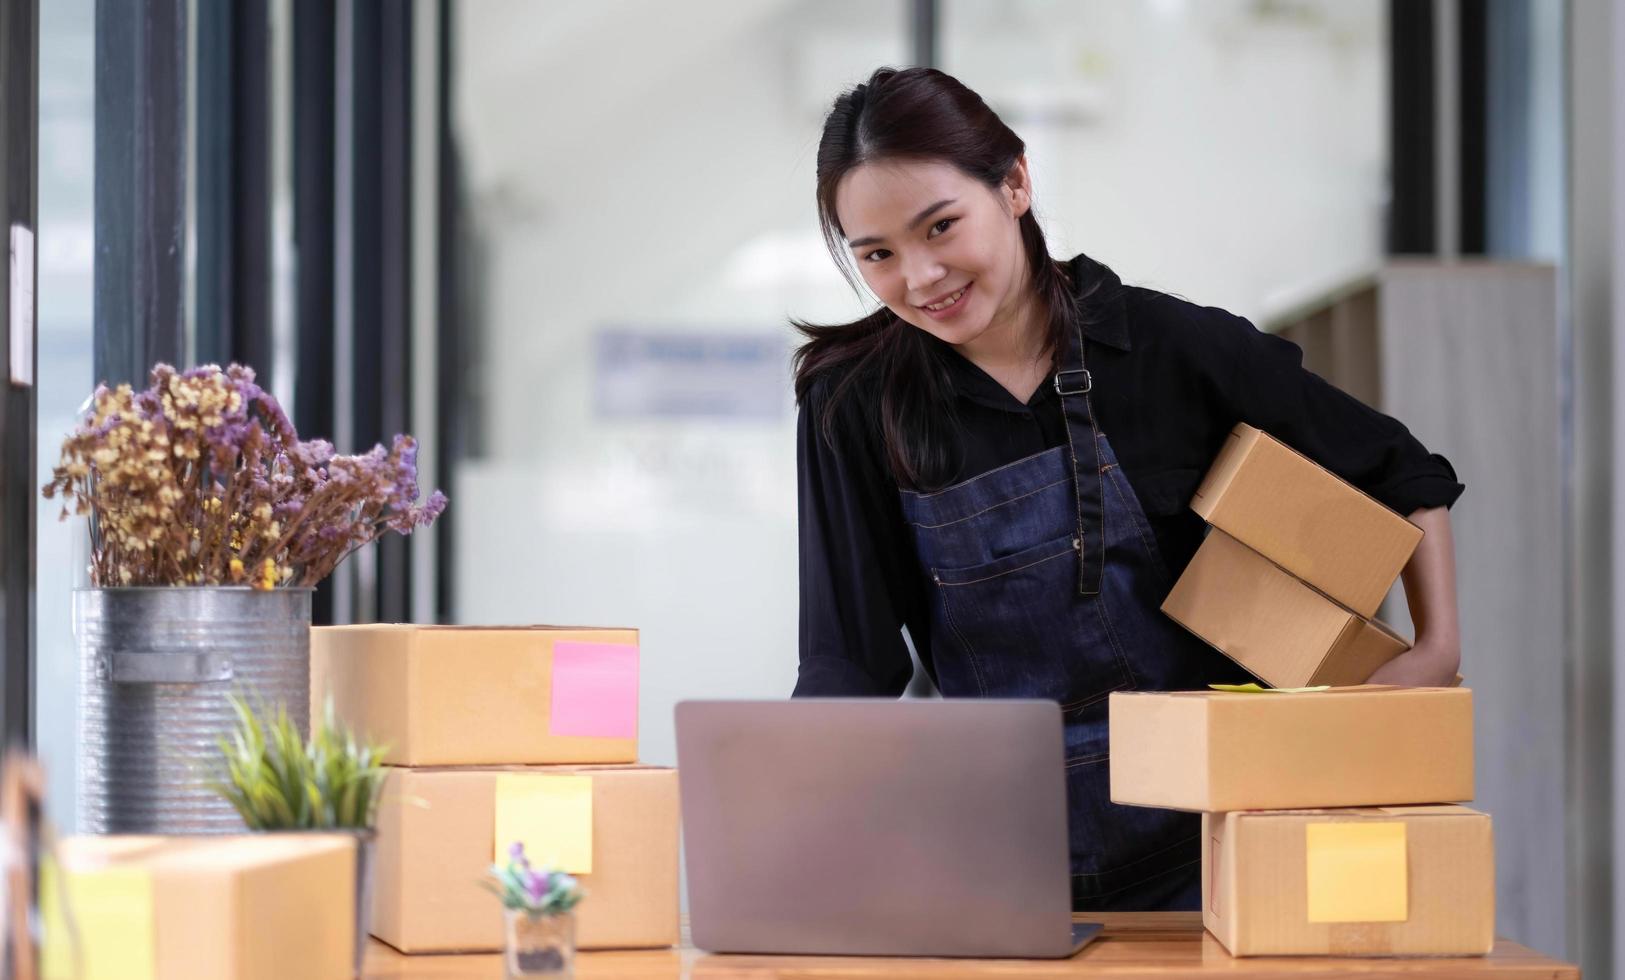 jonge aantrekkelijke aziatische vrouw eigenaar opstarten bedrijf kijk naar camerawerk blij met doos thuis pakketbezorging voorbereiden in mkb supply chain foto